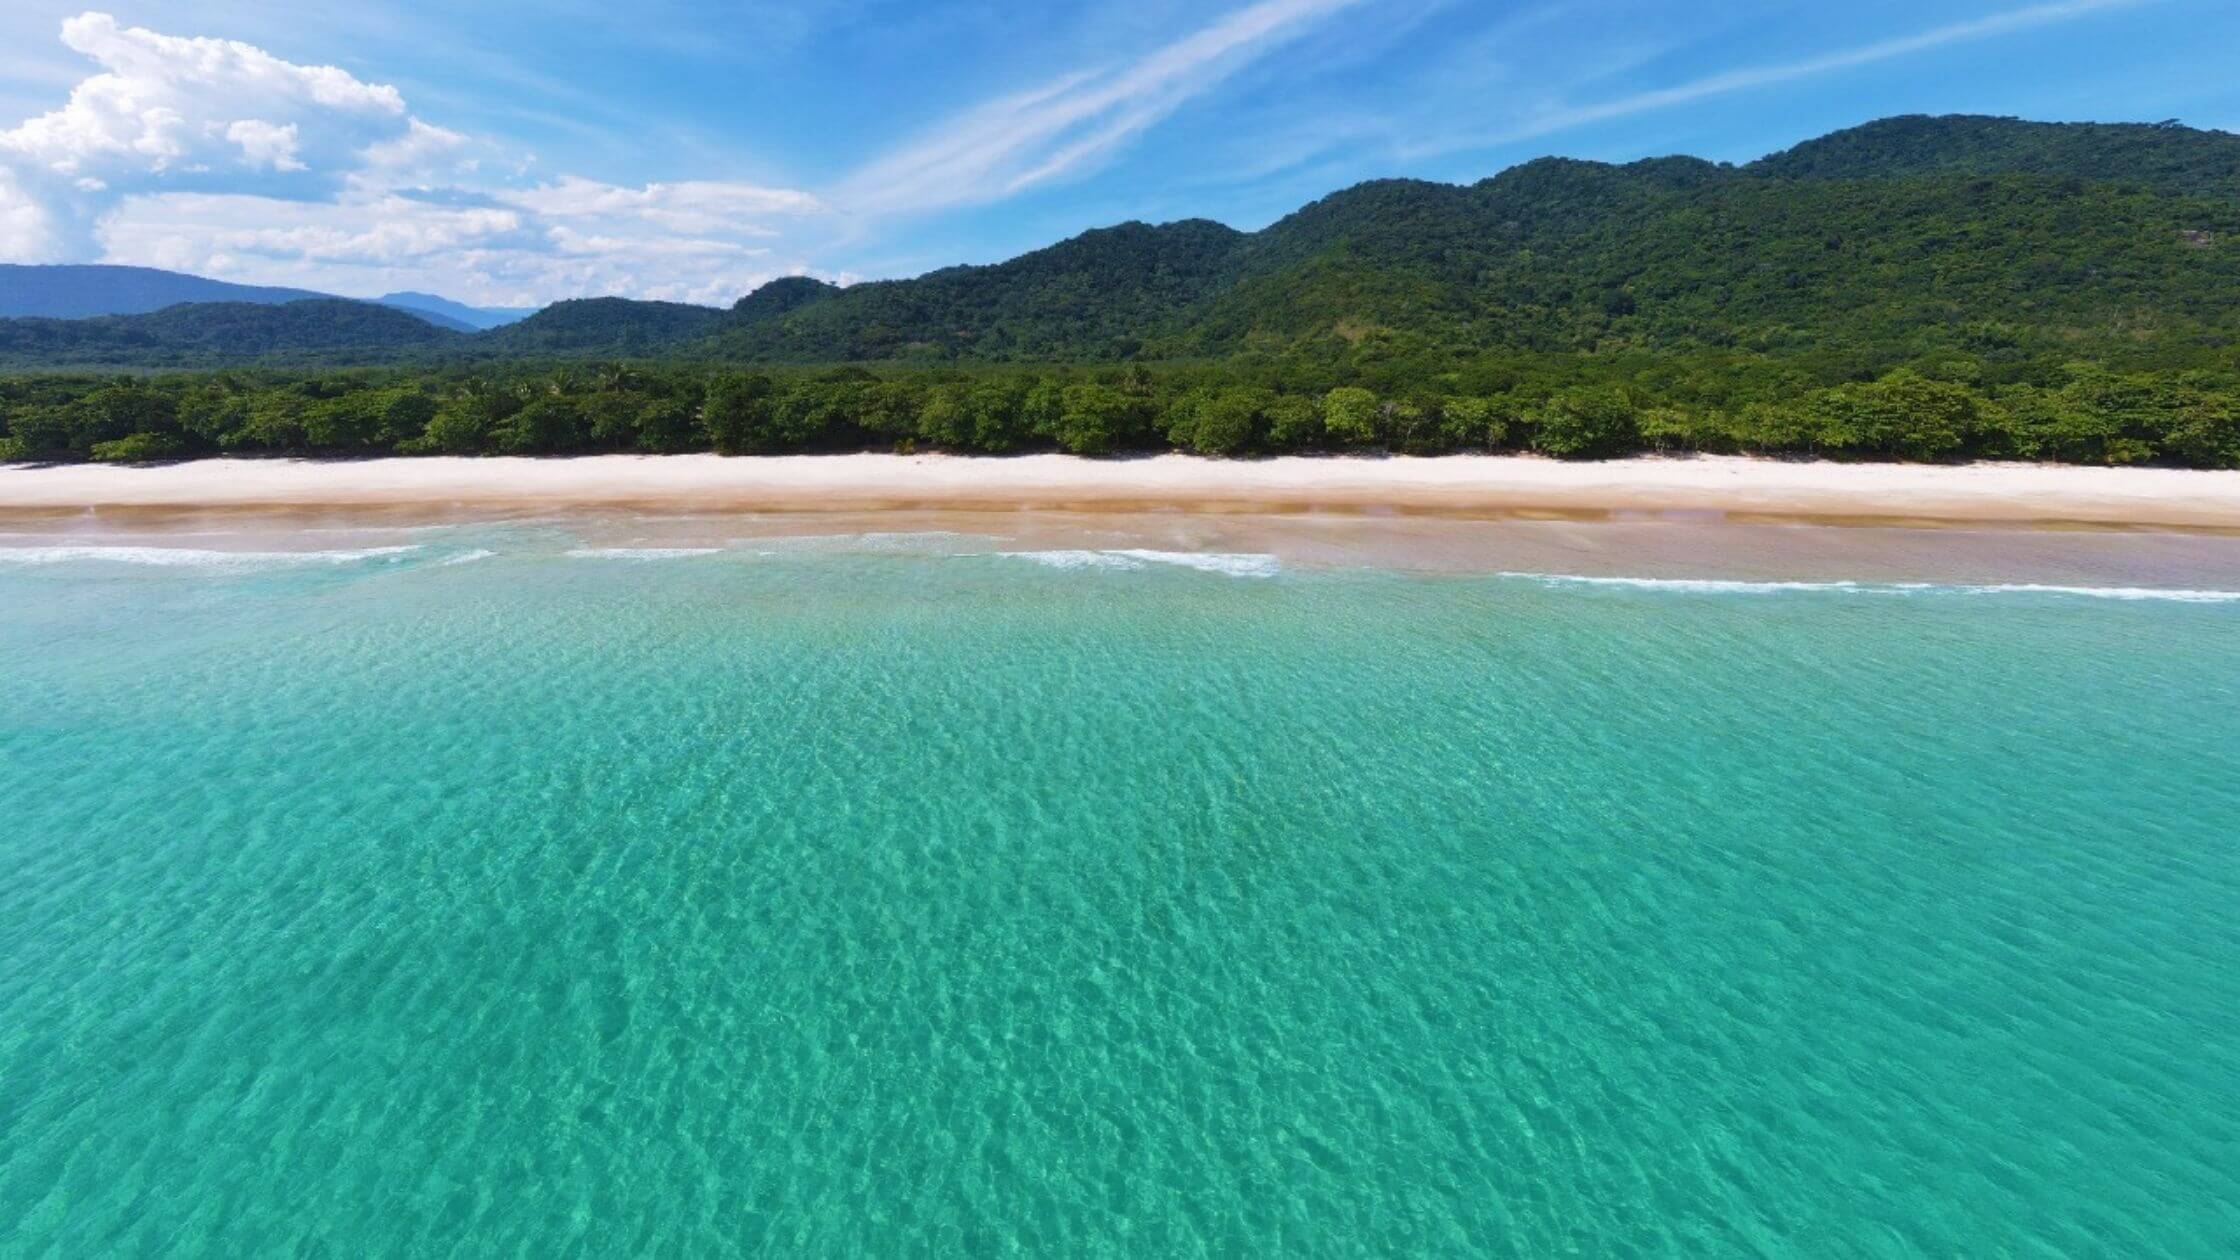 Vista aérea de uma extensa praia de areia clara com águas azul-turquesa que se estendem até a linha do horizonte, separada por uma densa vegetação tropical. Céu claro com nuvens dispersas complementa a serenidade da cena.